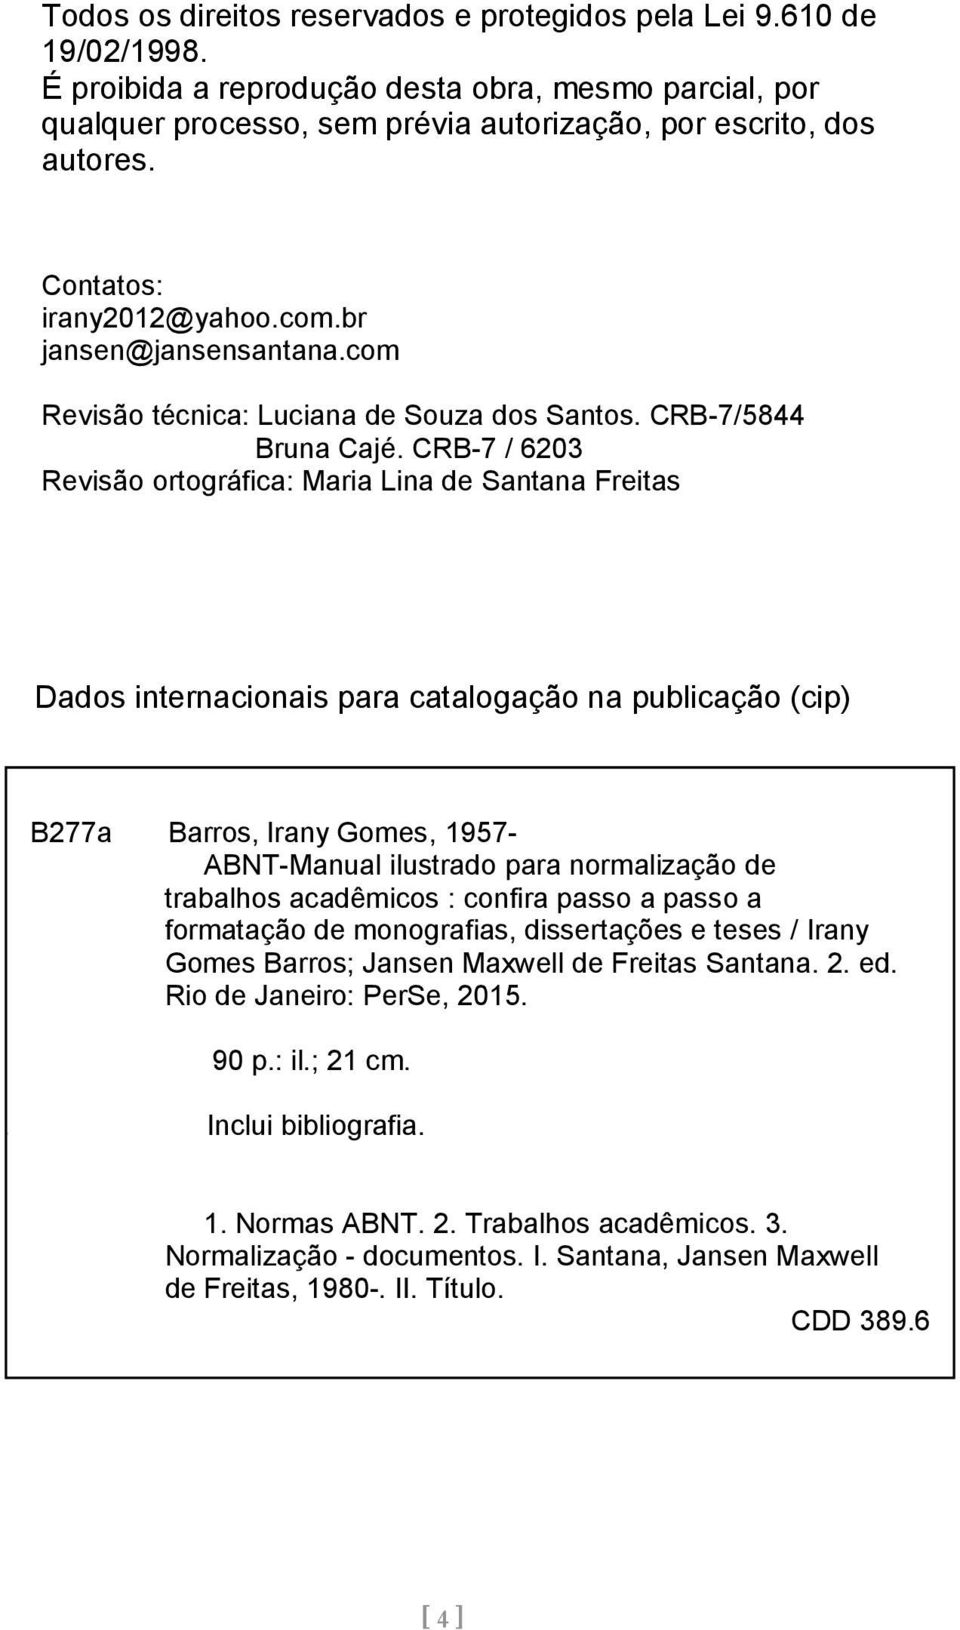 CRB-7 / 6203 Revisão ortográfica: Maria Lina de Santana Freitas Dados internacionais para catalogação na publicação (cip) B277a Barros, Irany Gomes, 1957- ABNT-Manual ilustrado para normalização de